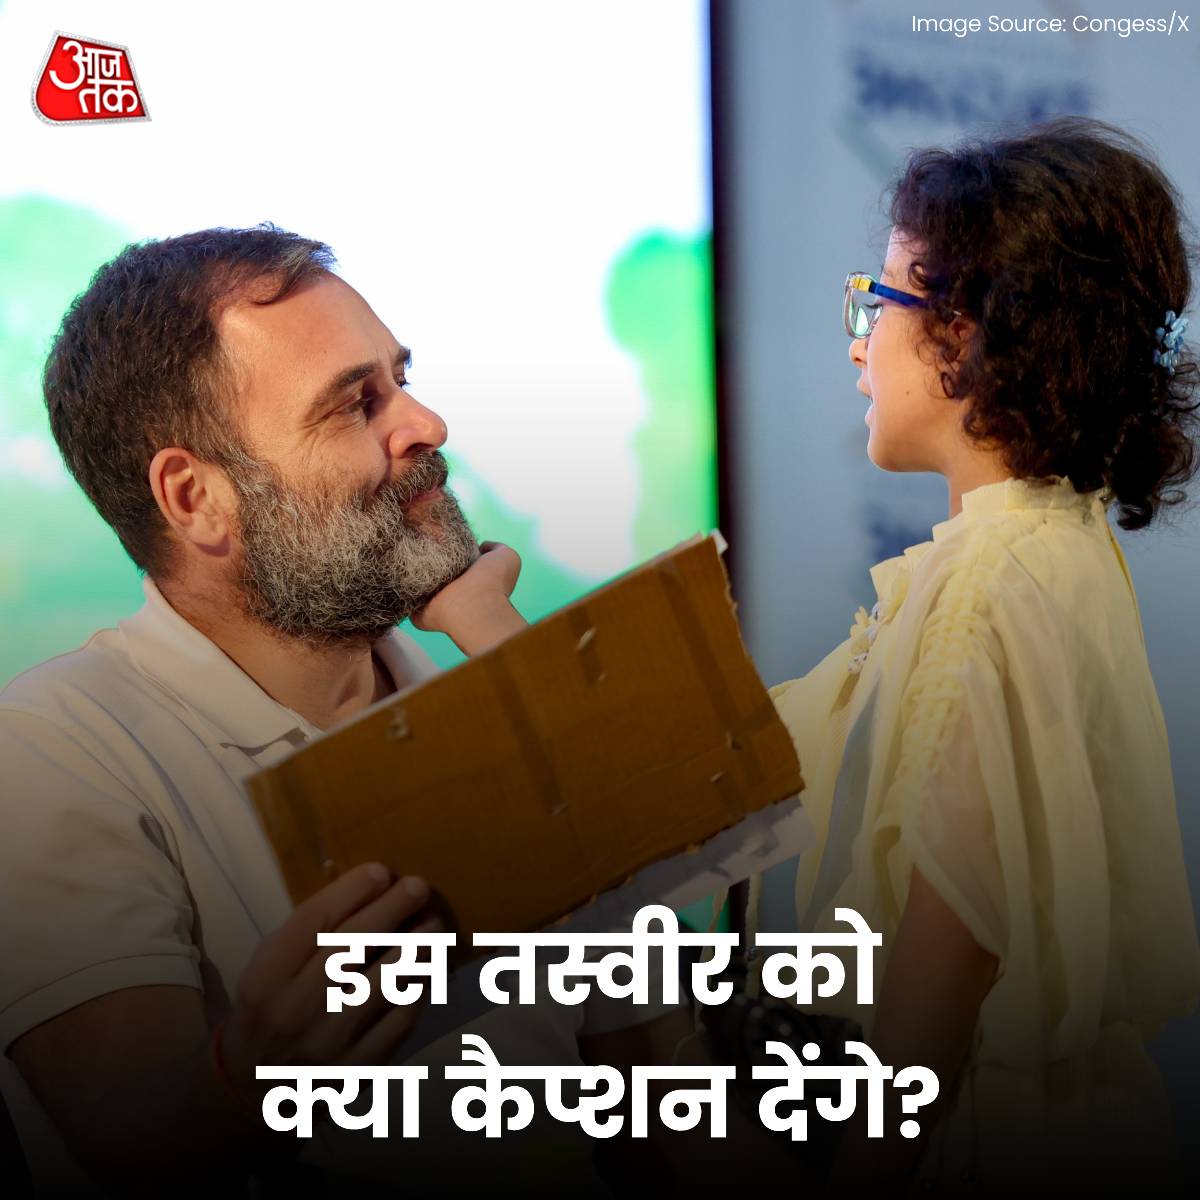 नन्ही बच्ची और कांग्रेस नेता राहुल गांधी की इस तस्वीर को क्या कैप्शन देंगे आप?

#CaptionThis #RahulGandhi #Congress #LokSabaElections2024 #ATYourSpace